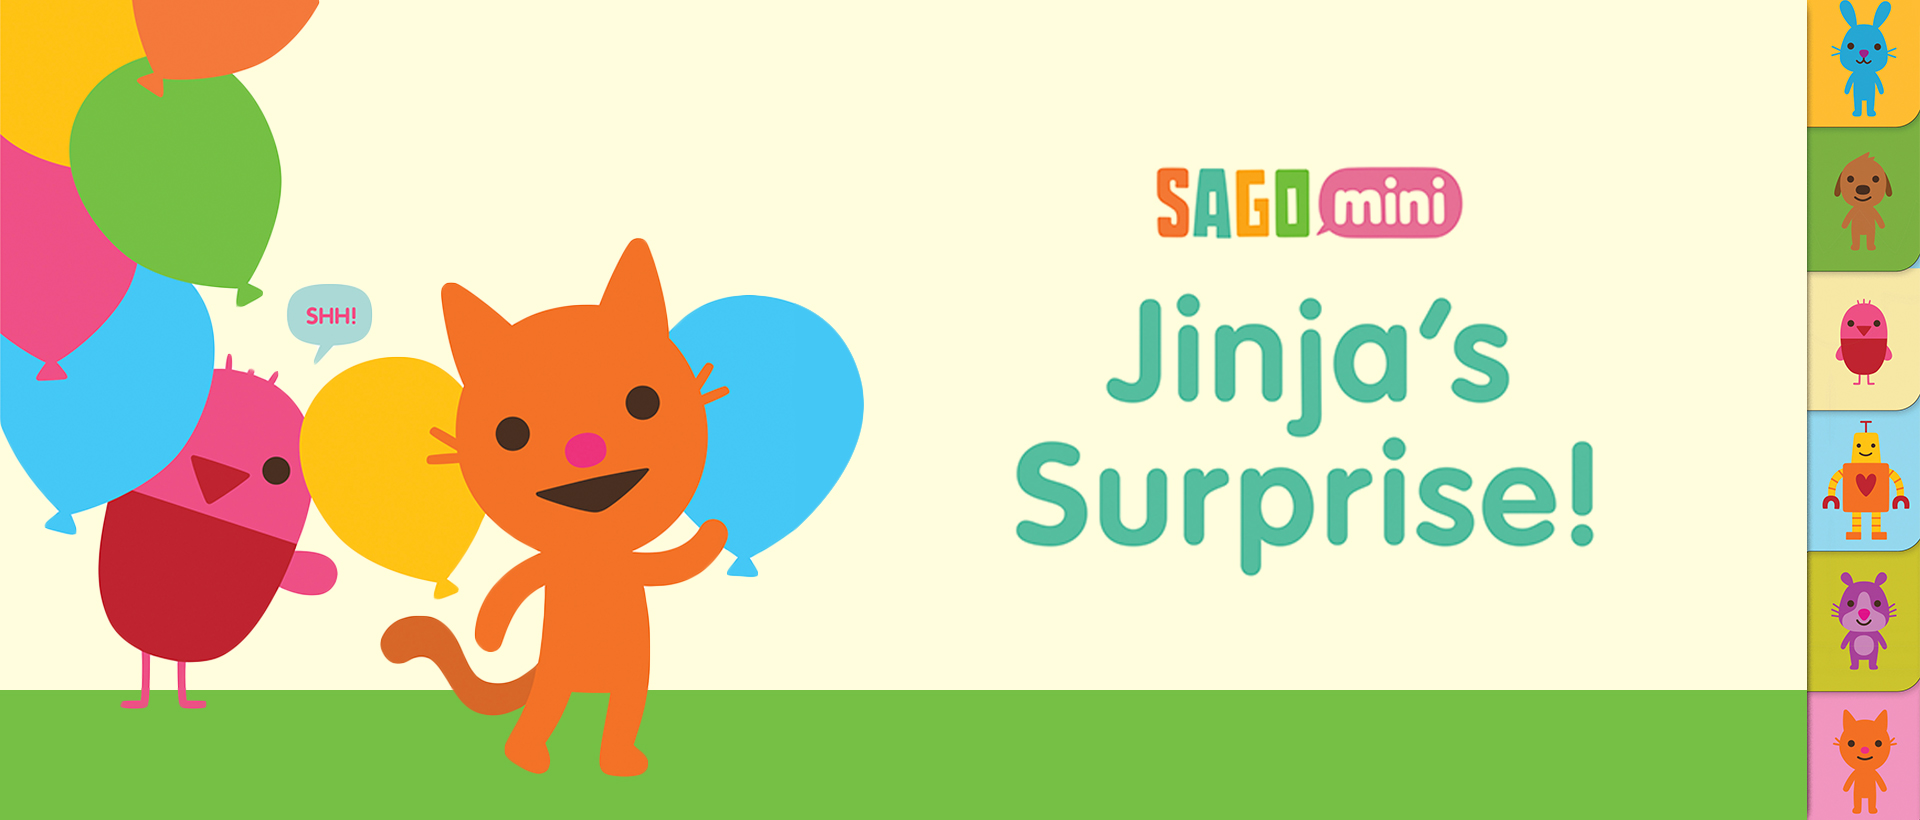 Jinja’s Surprise